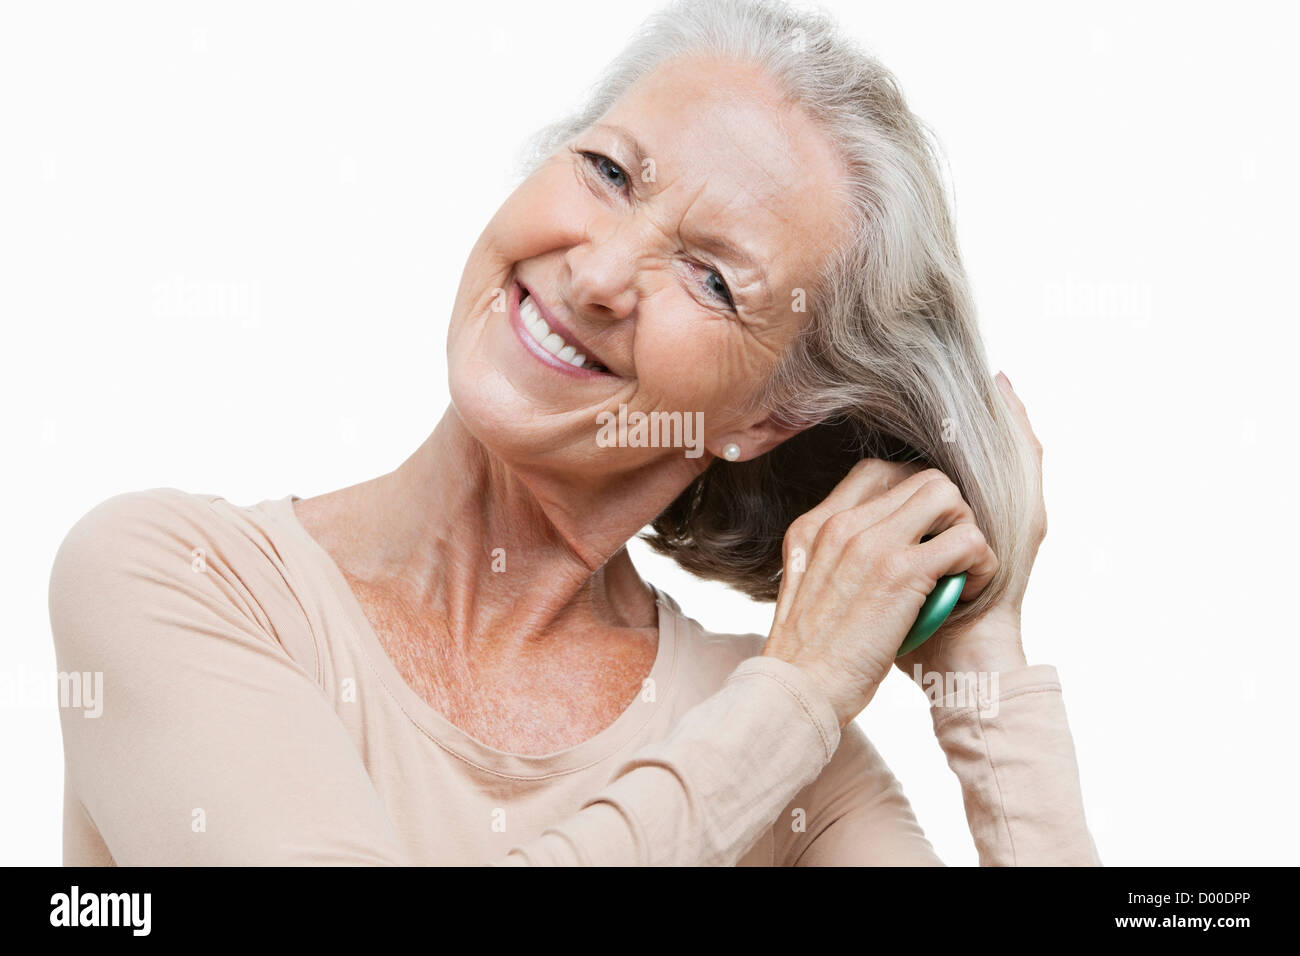 Ritratto di sorridente donna senior pettinare i capelli contro uno sfondo bianco Foto Stock